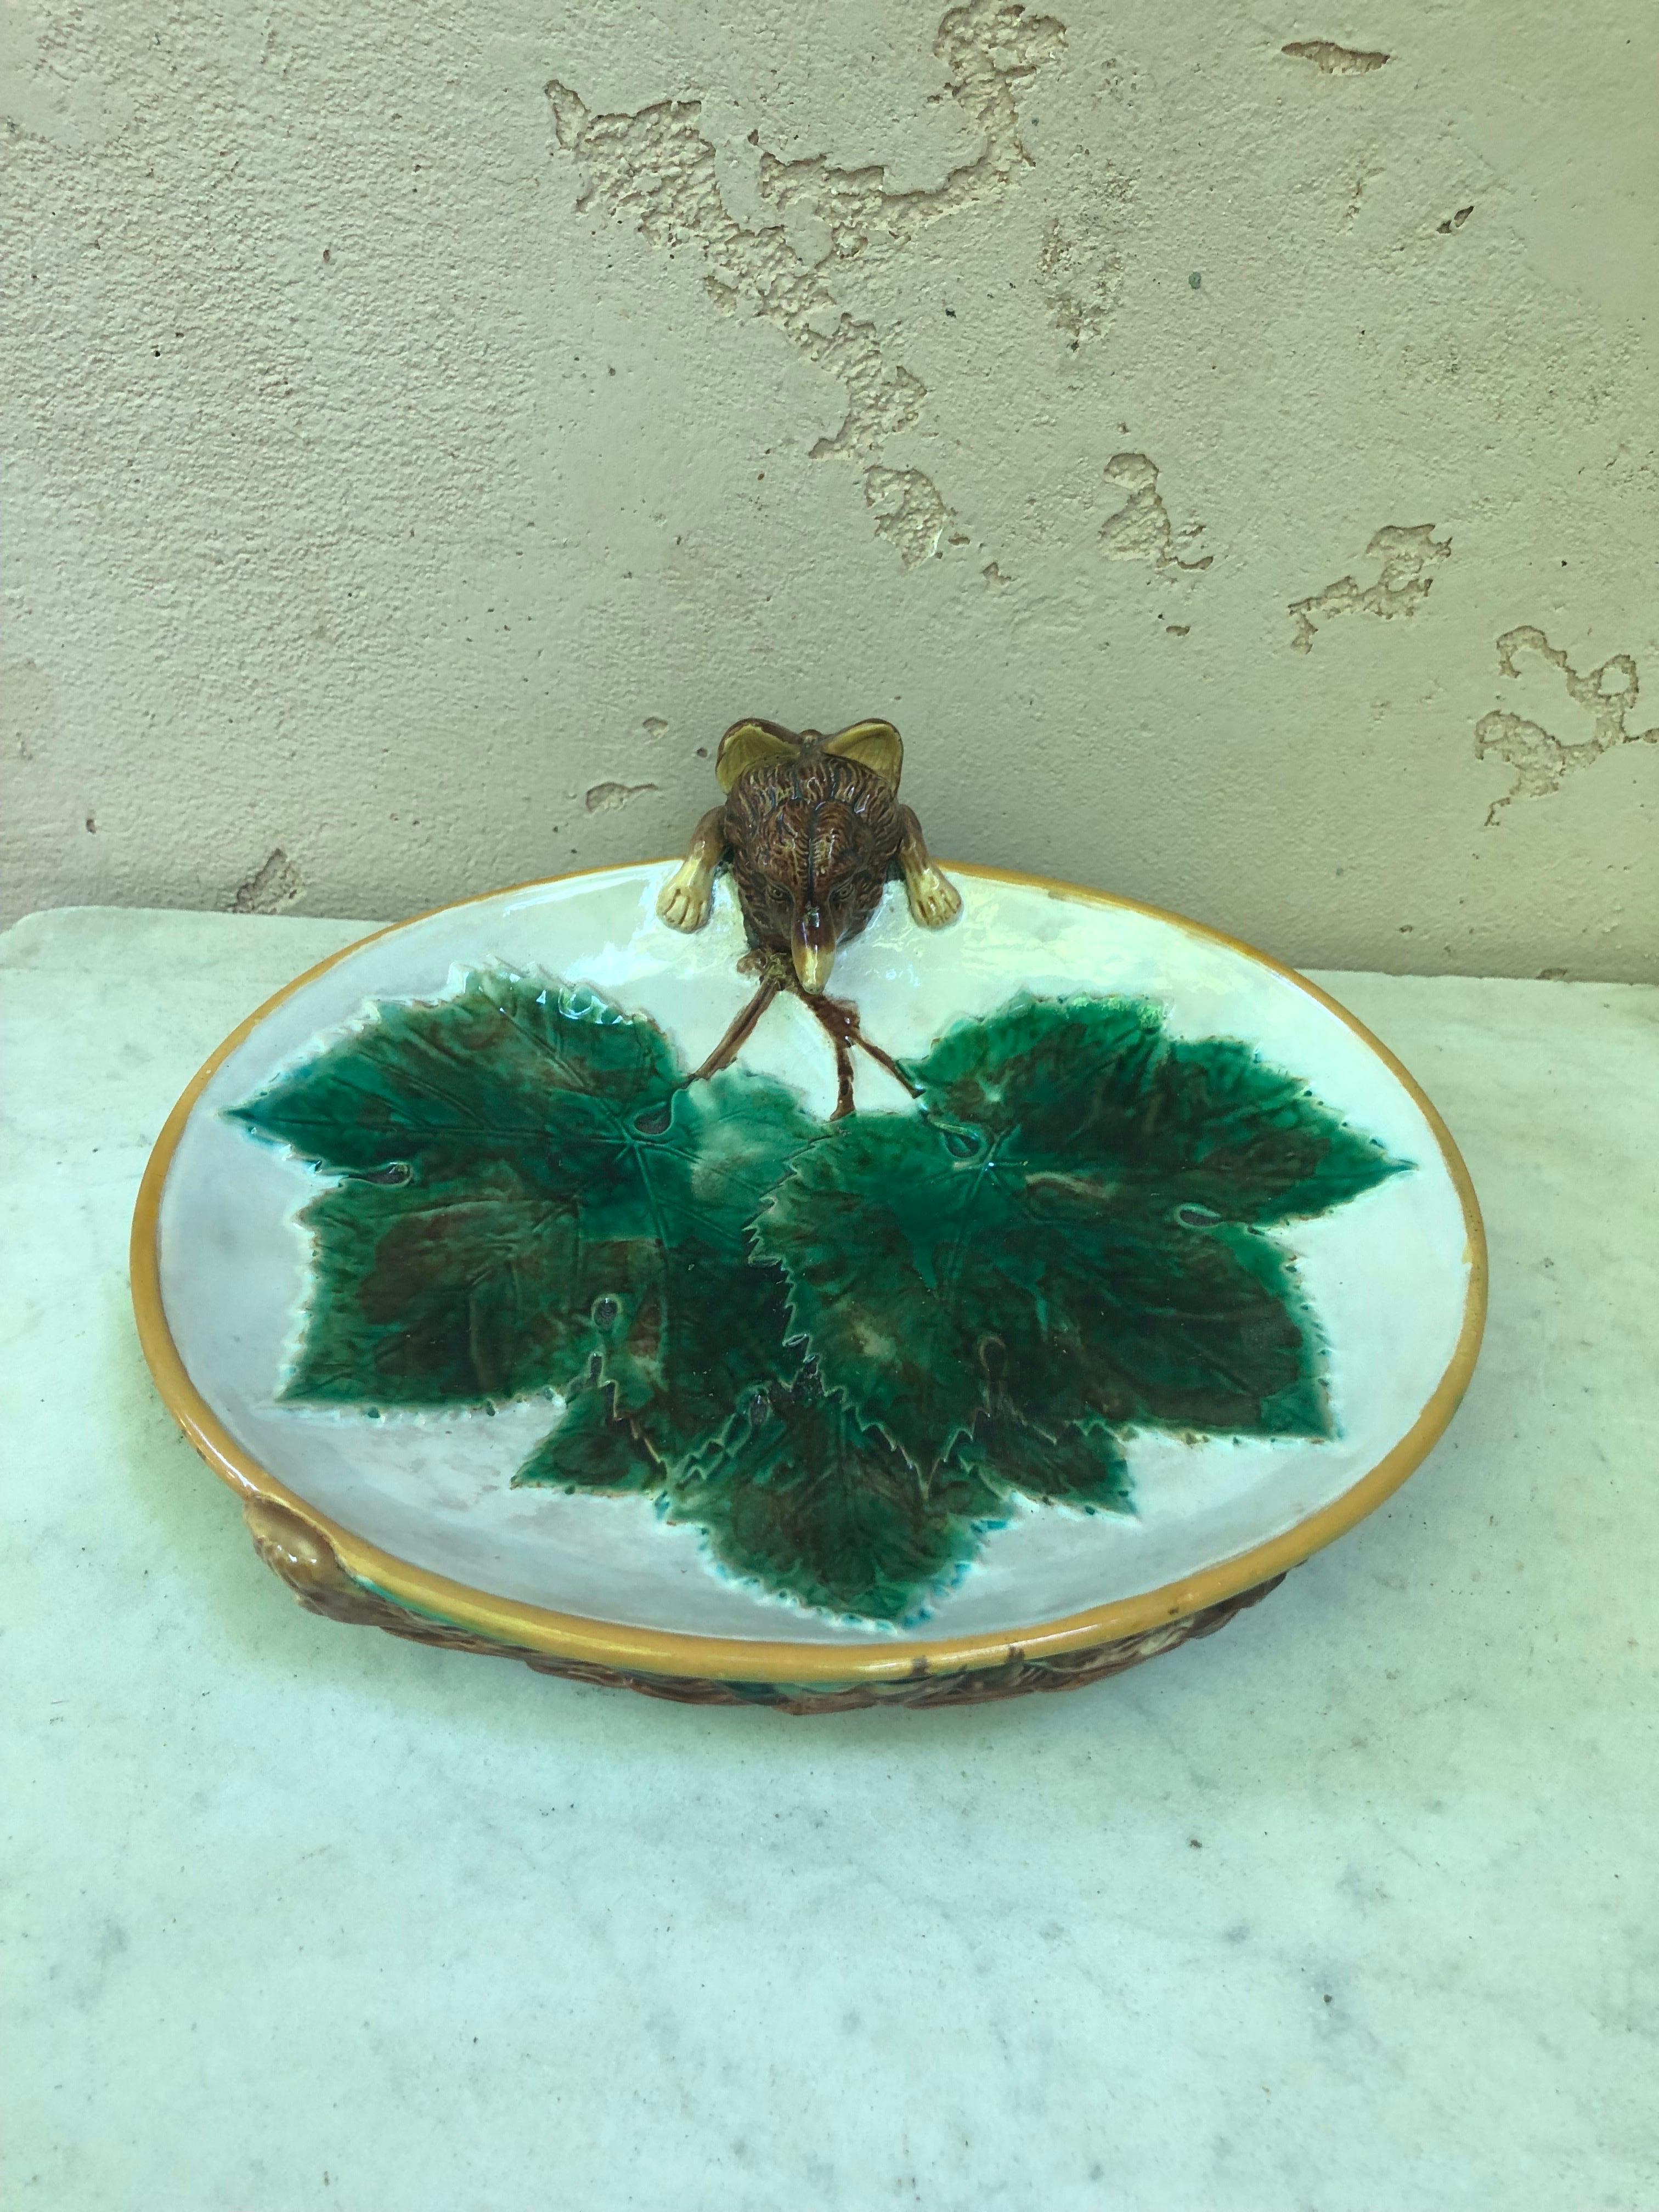 Plat de service en majolique décoré de trois feuilles de vigne vertes, l'anse en forme de renard regardant dans le bol, sa queue apparaissant sur le dessous tacheté, signé George Jones.